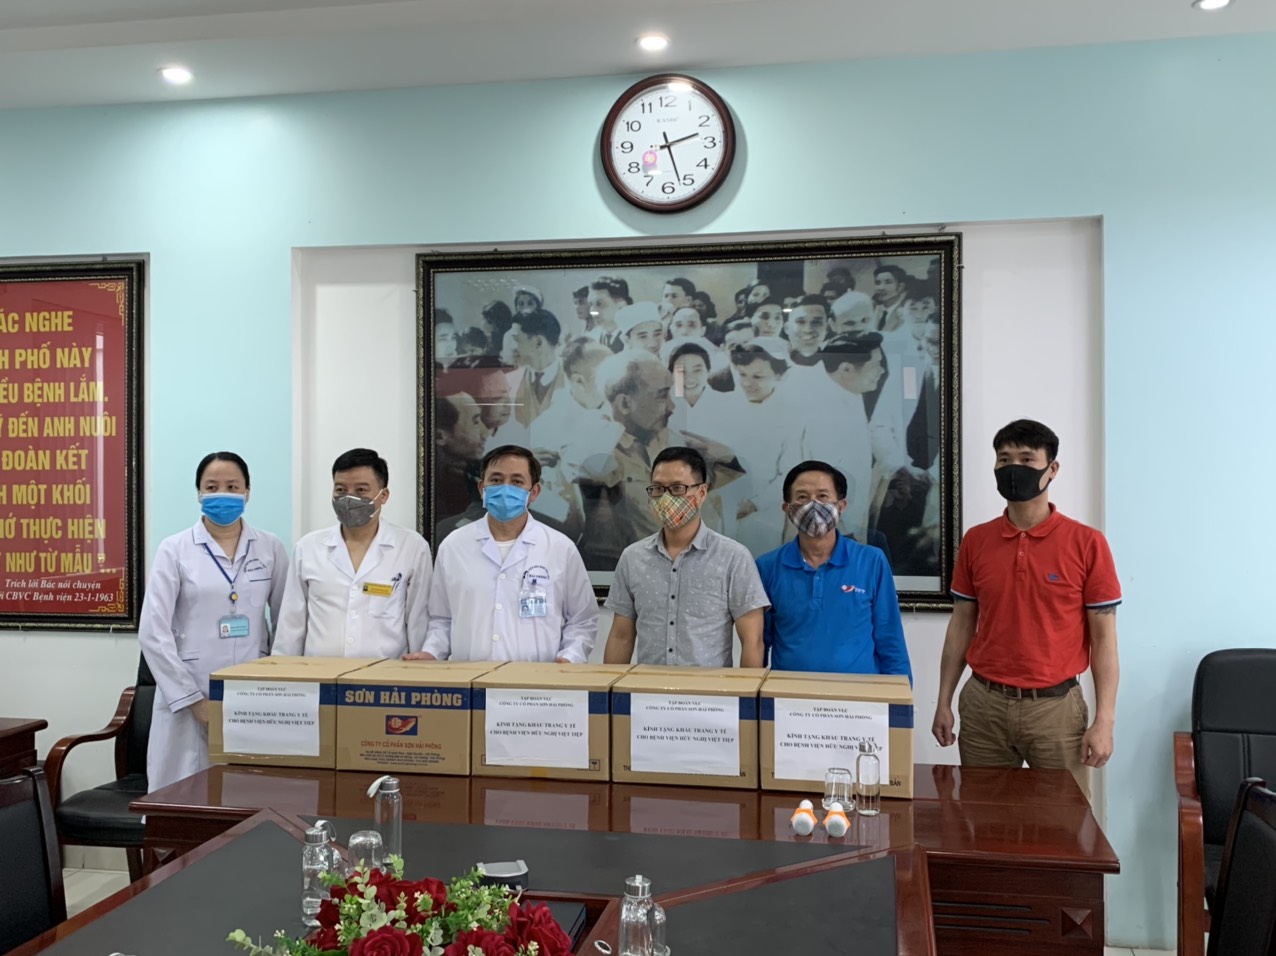 BCH công đoàn Công ty CP Sơn Hải Phòng đã trao tặng 2.000 khẩu trang y tế N95 cho các bác sĩ bệnh viện hữu nghị Việt Tiệp – Hải Phòng.